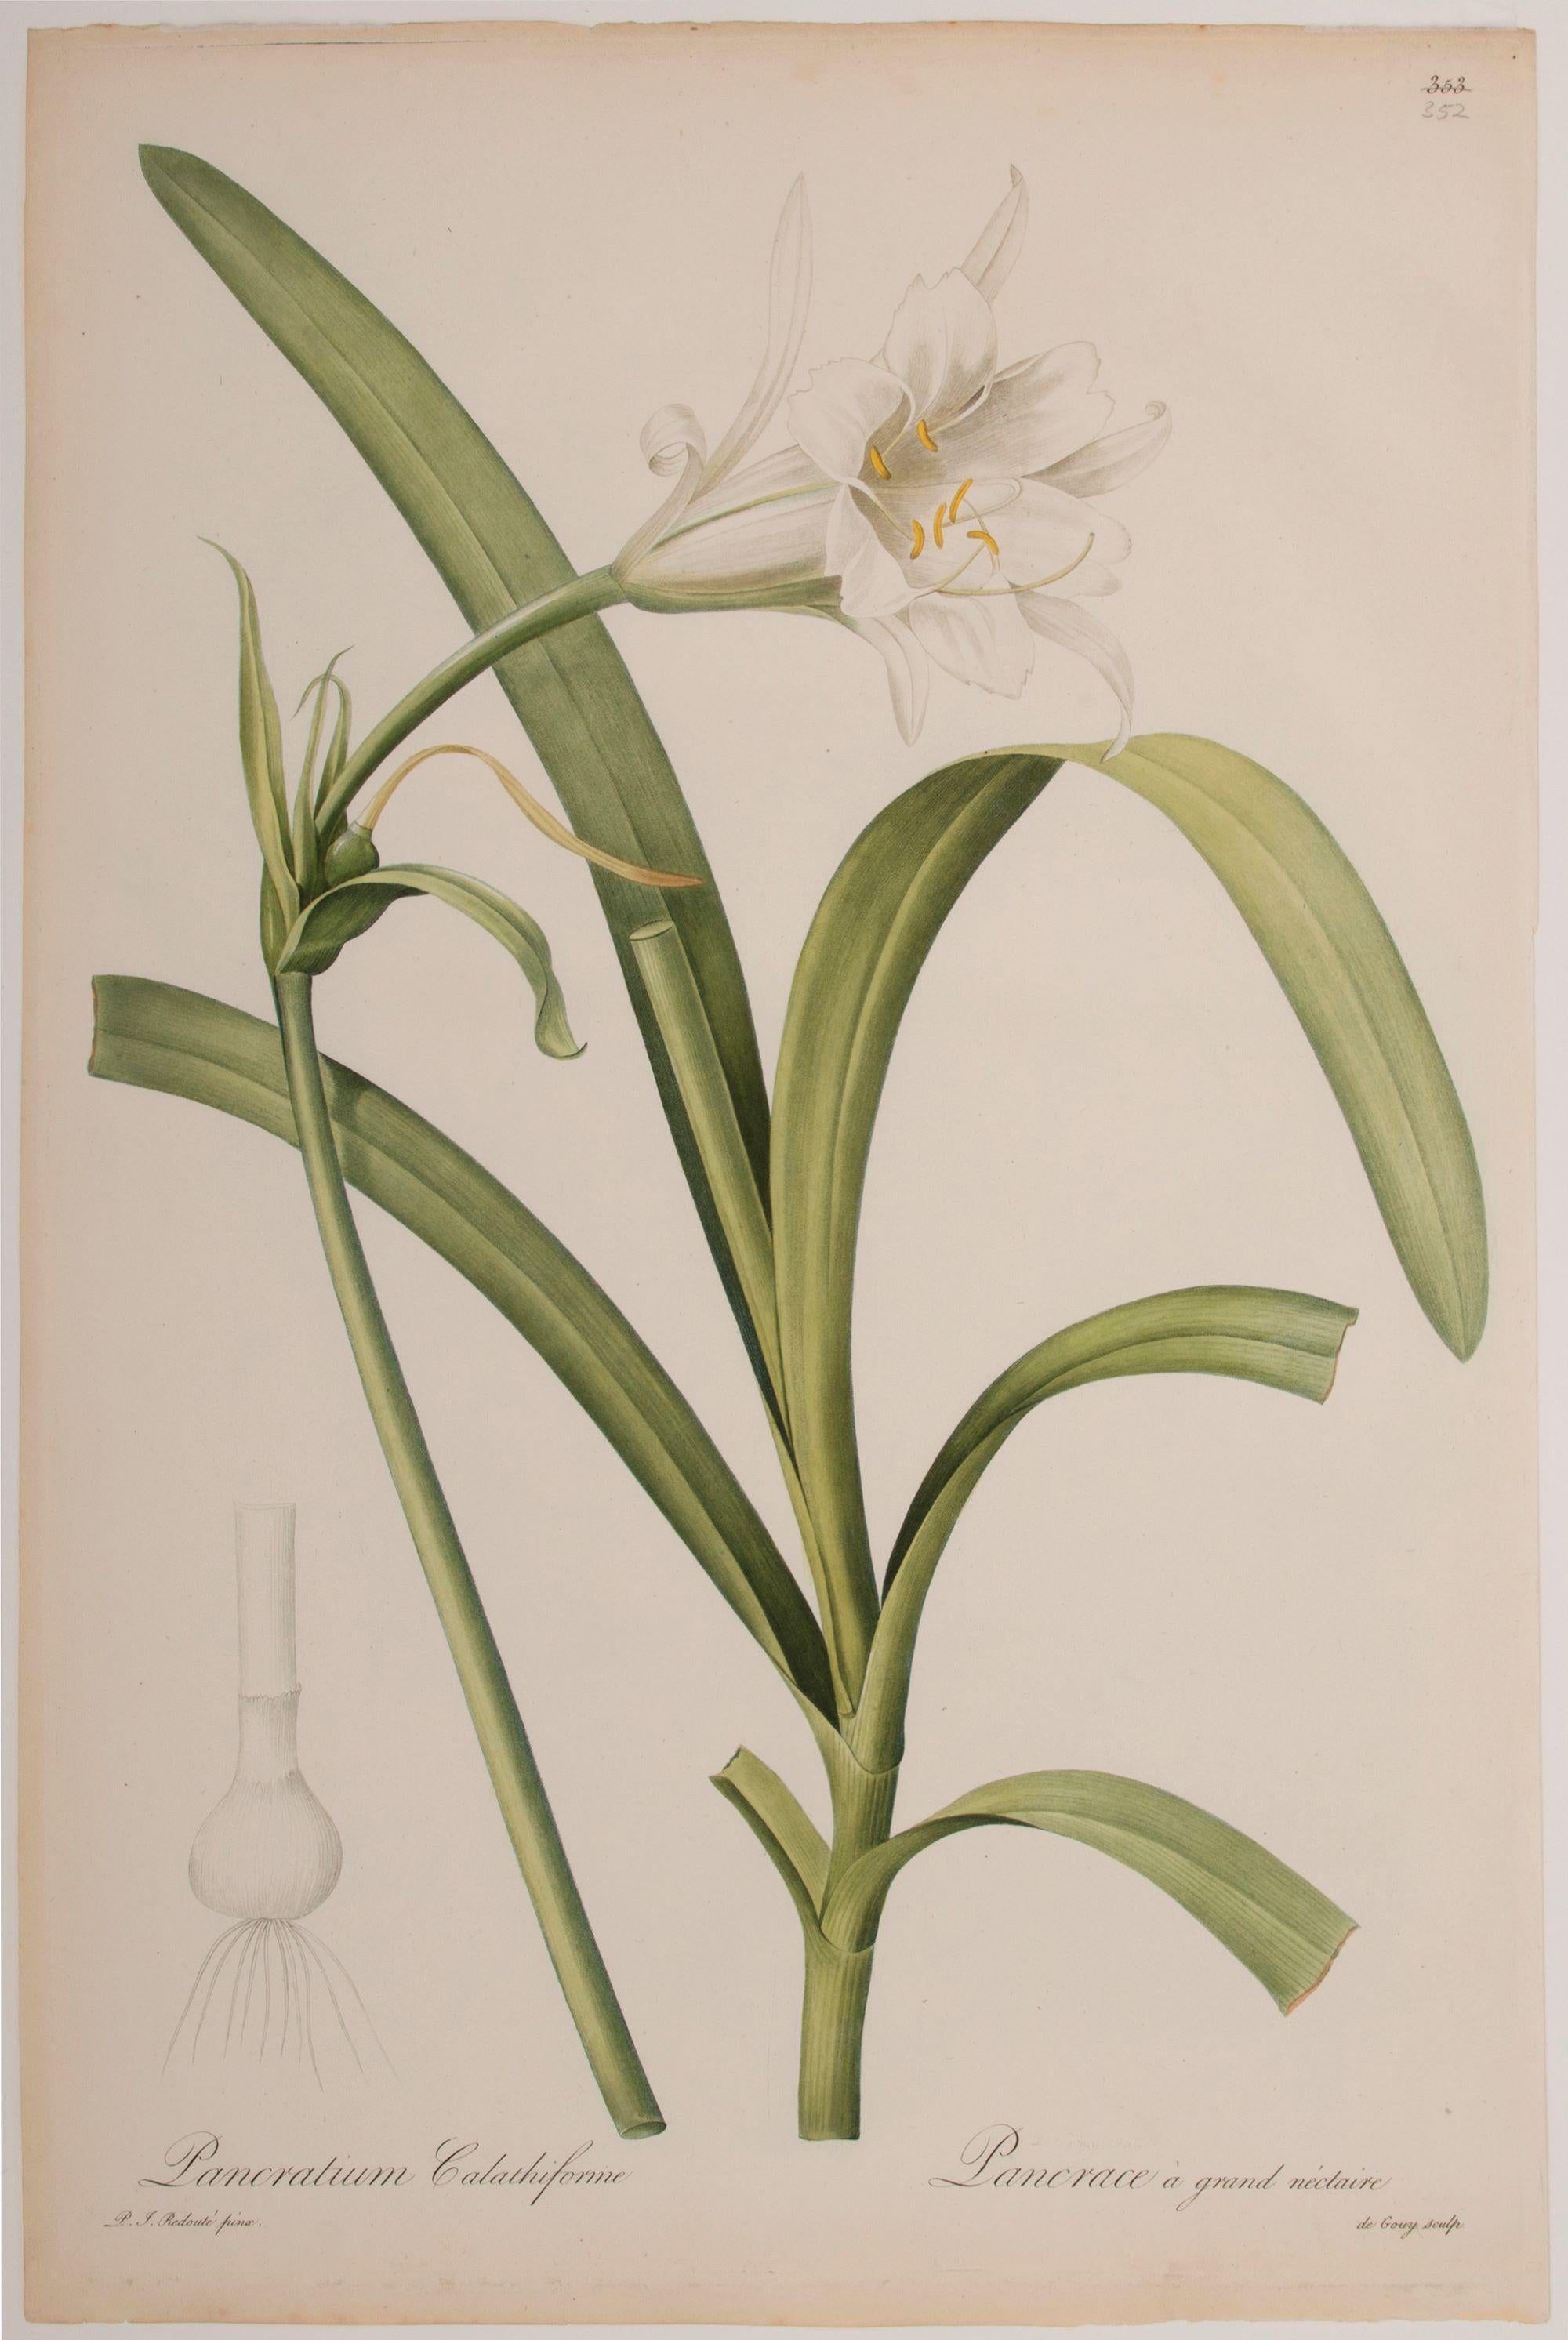 Pancratium Calathiforme  - Print de Pierre-Joseph Redouté